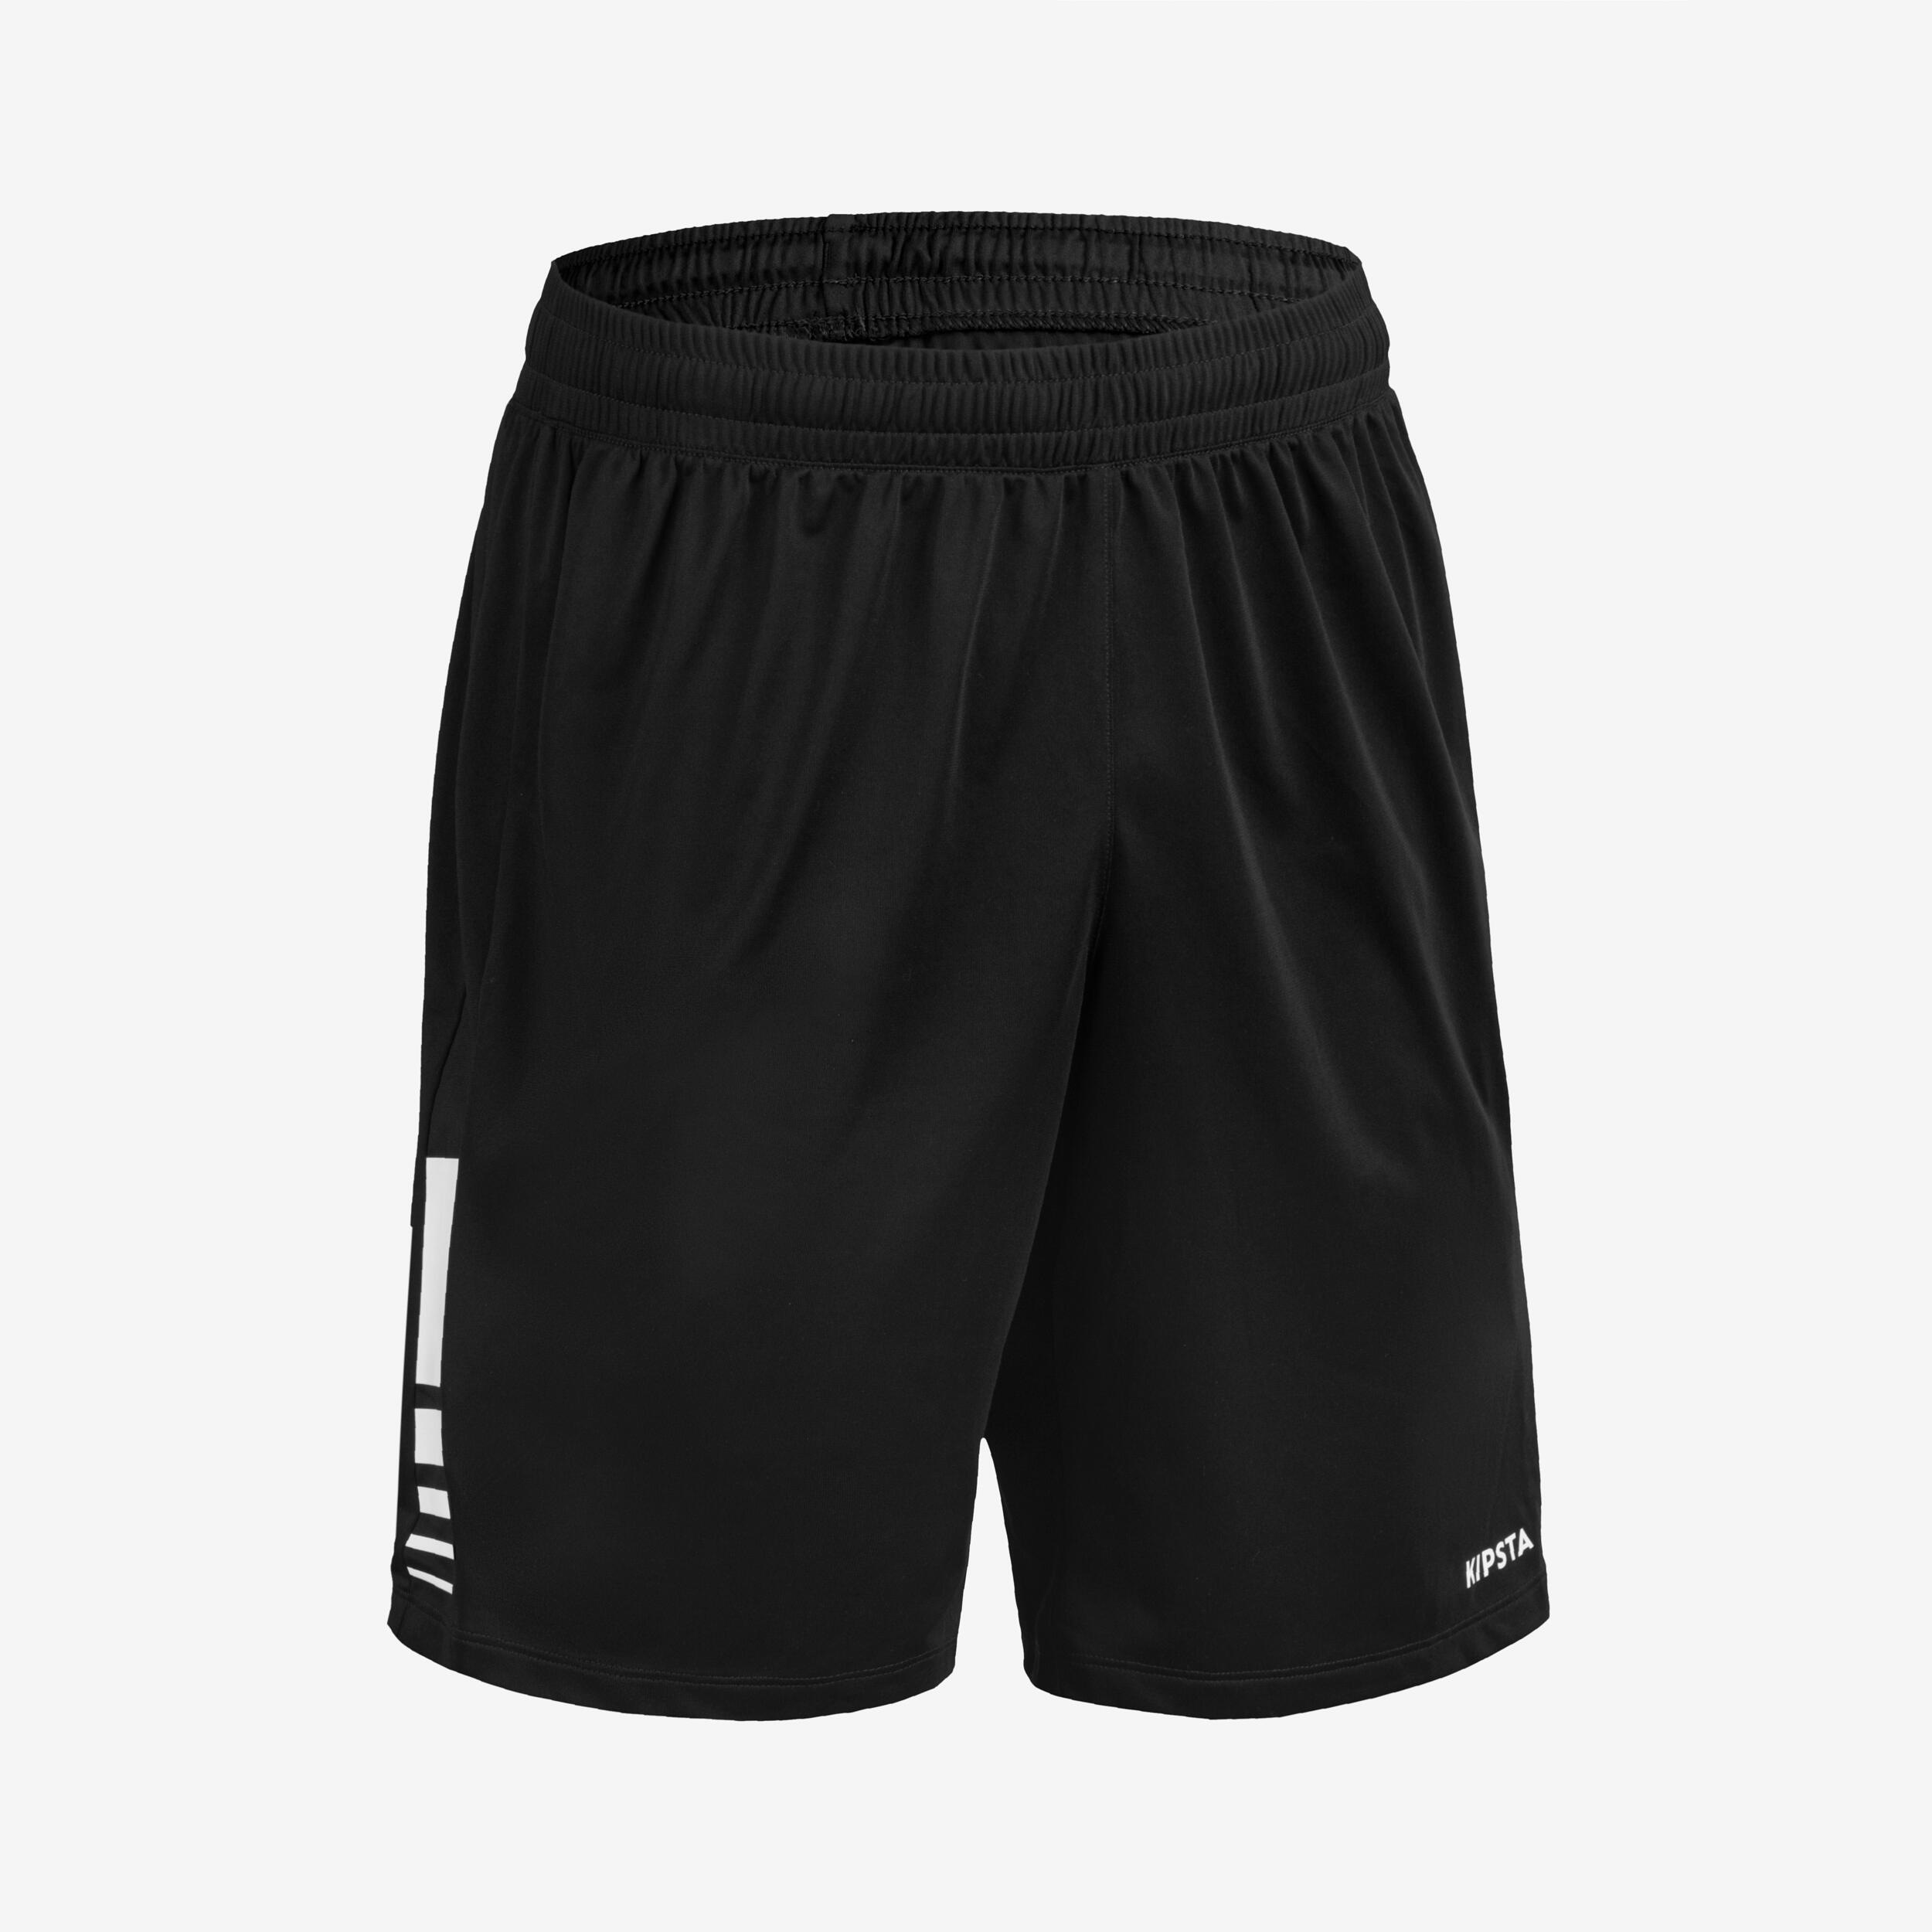 KIPSTA Men's Handball Shorts H100 - Black